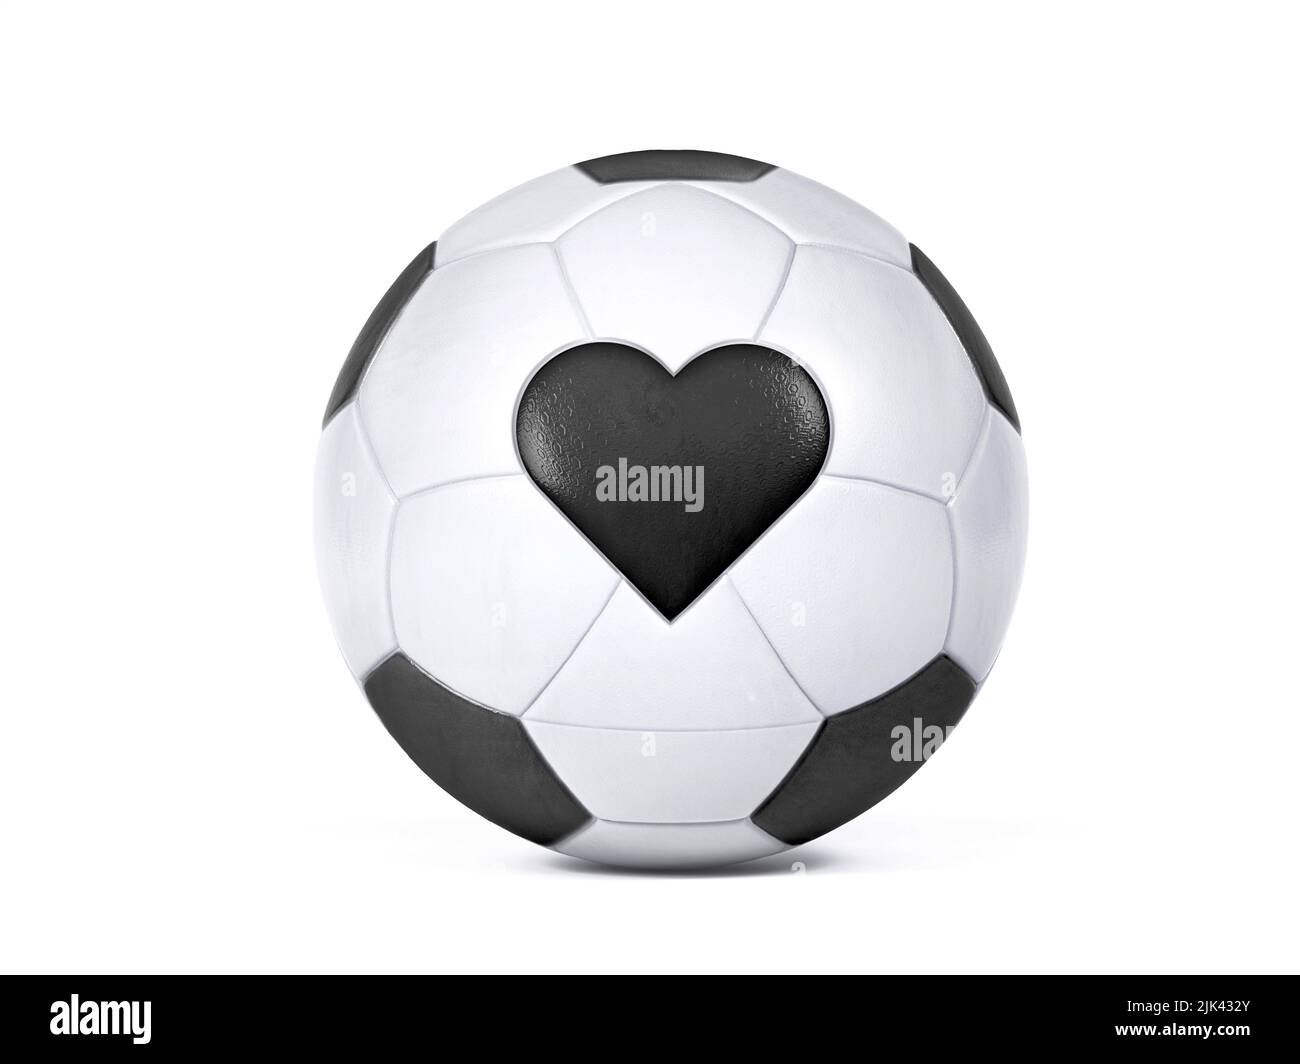 Ballon de football blanc isolé avec drapeau noir en forme de cœur. Centré sur un arrière-plan blanc avec ombre portée en haute résolution. 3D Ilustreti Banque D'Images